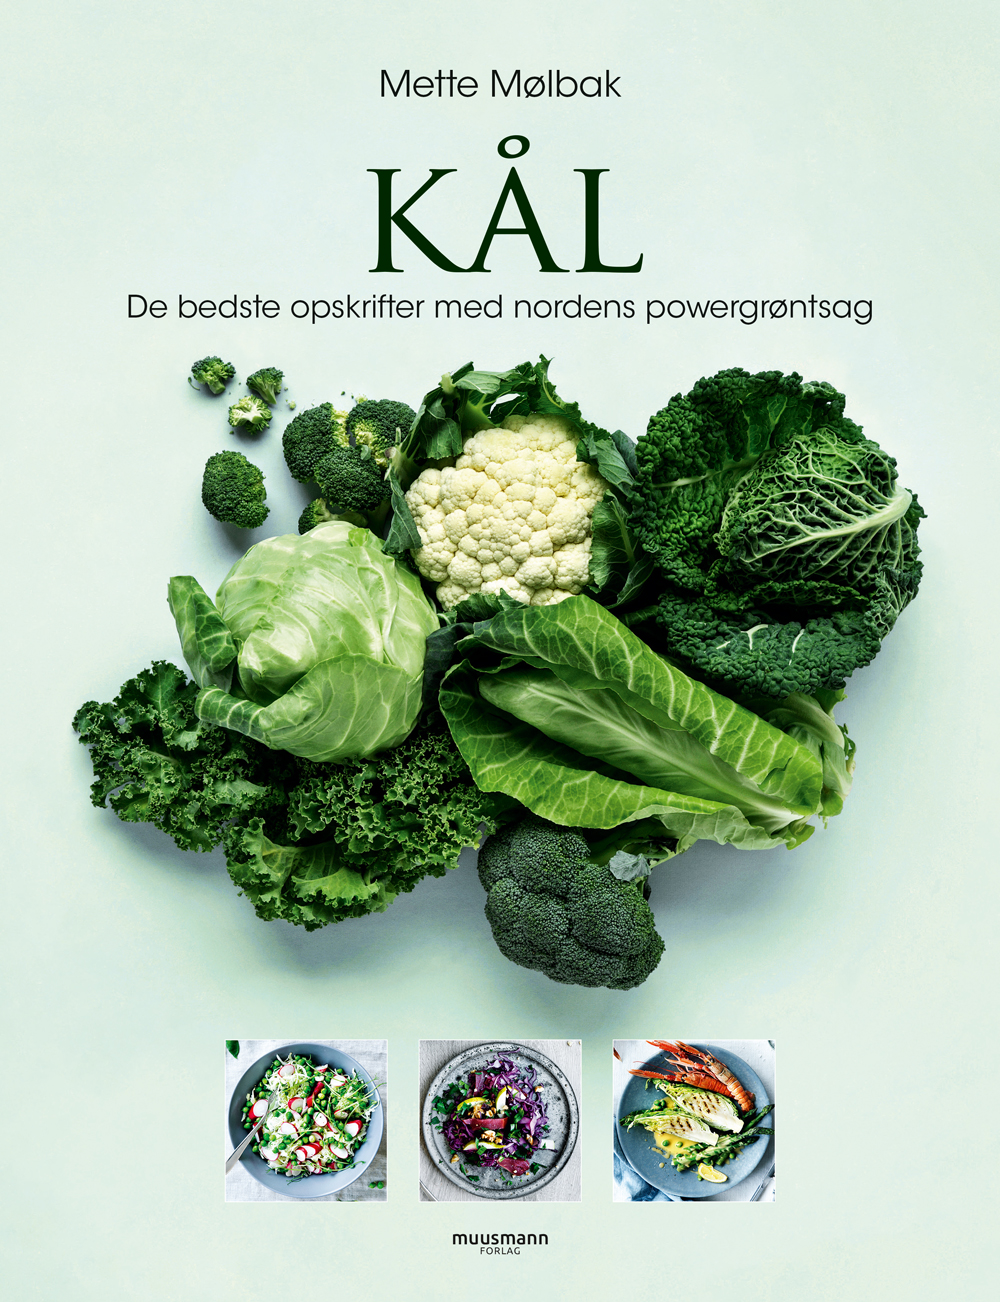 Der er spændende opskrifter i kogebogen Kål – de bedste opskrifter med nordens powergrøntsag. 